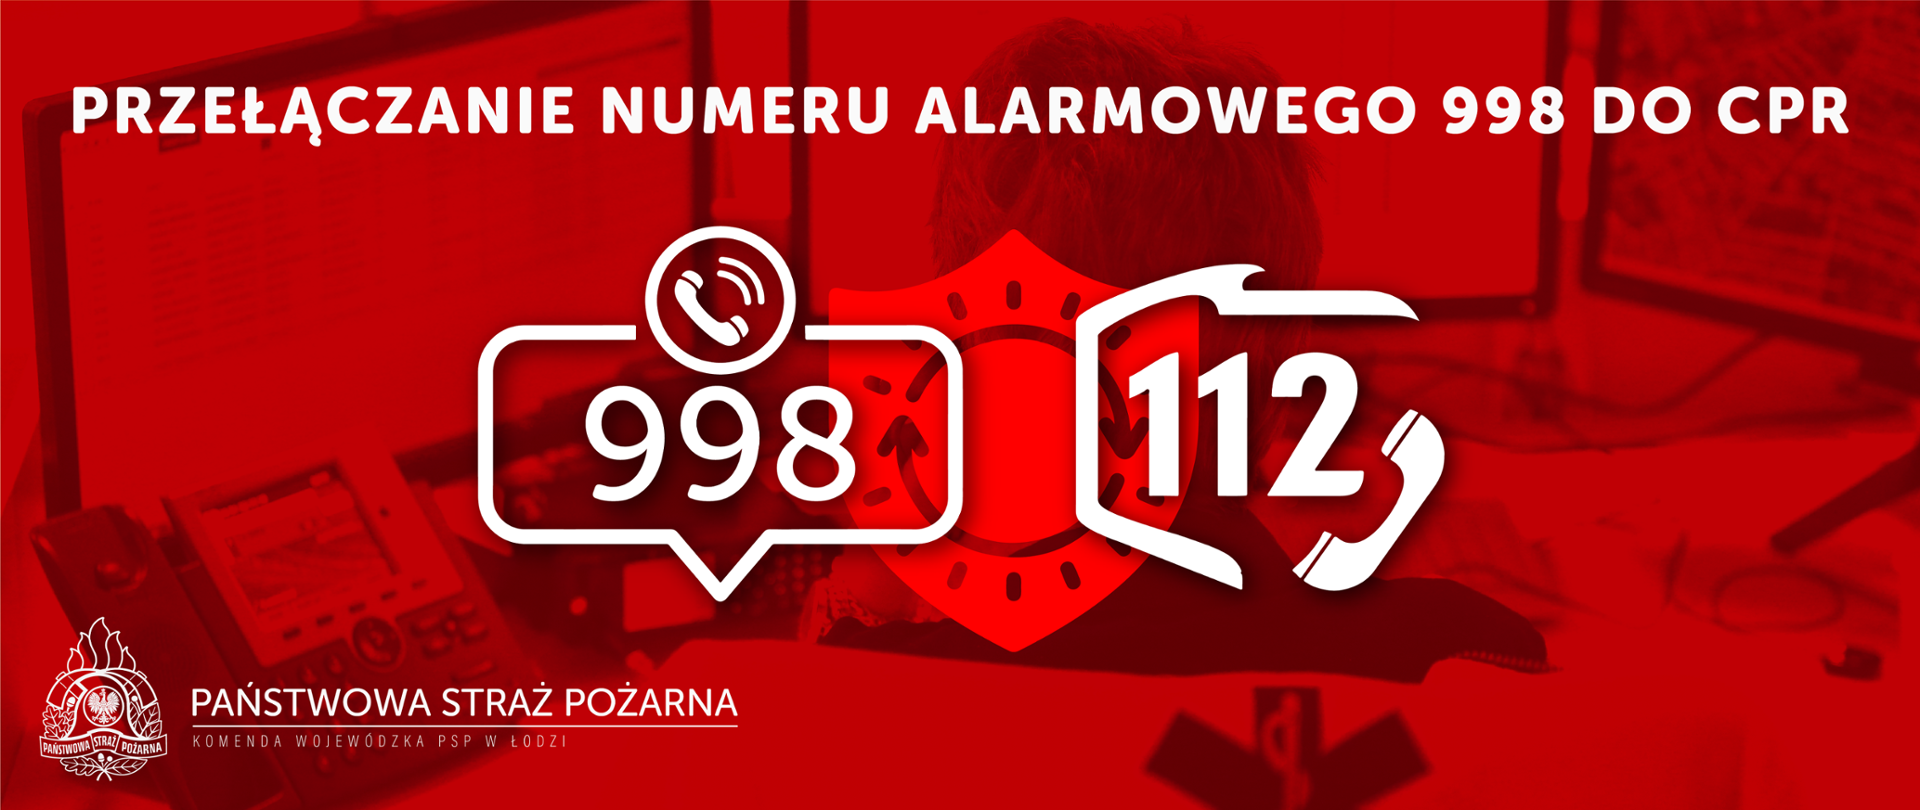 Baner w kolorach czerwieni o treści przełączenie numeru alarmowego 998 do CPR, Państwowa Straż Pożarna 